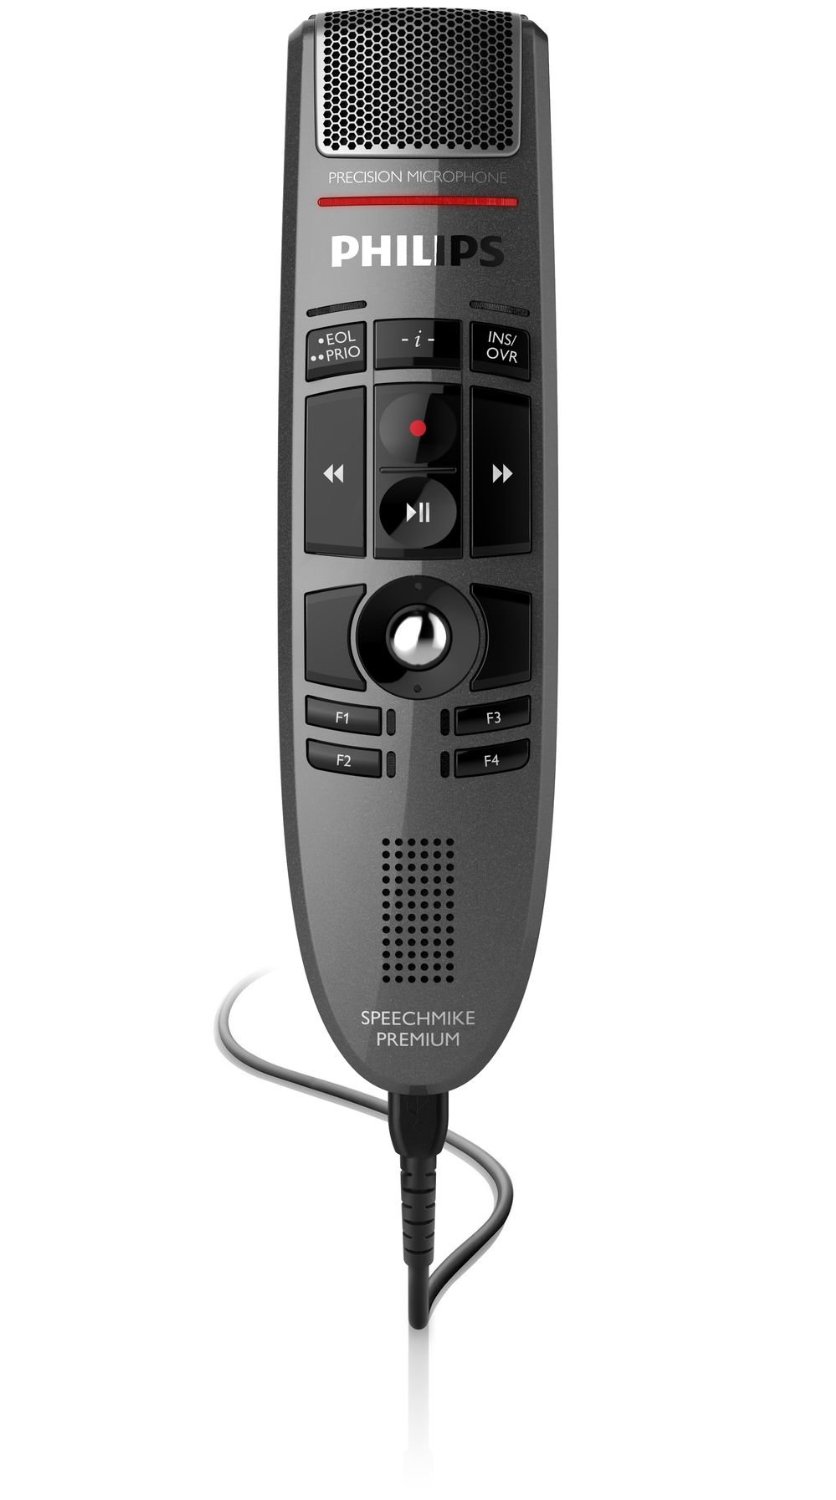 Голосовое управление филипс. Микрофон Филипс. Philips smp3700 SPEECHMIKE Premium Touch Precision USB Microphone - Push button Operation. Микрофон для диктофона. Реклама диктофона Филипс сарказм.